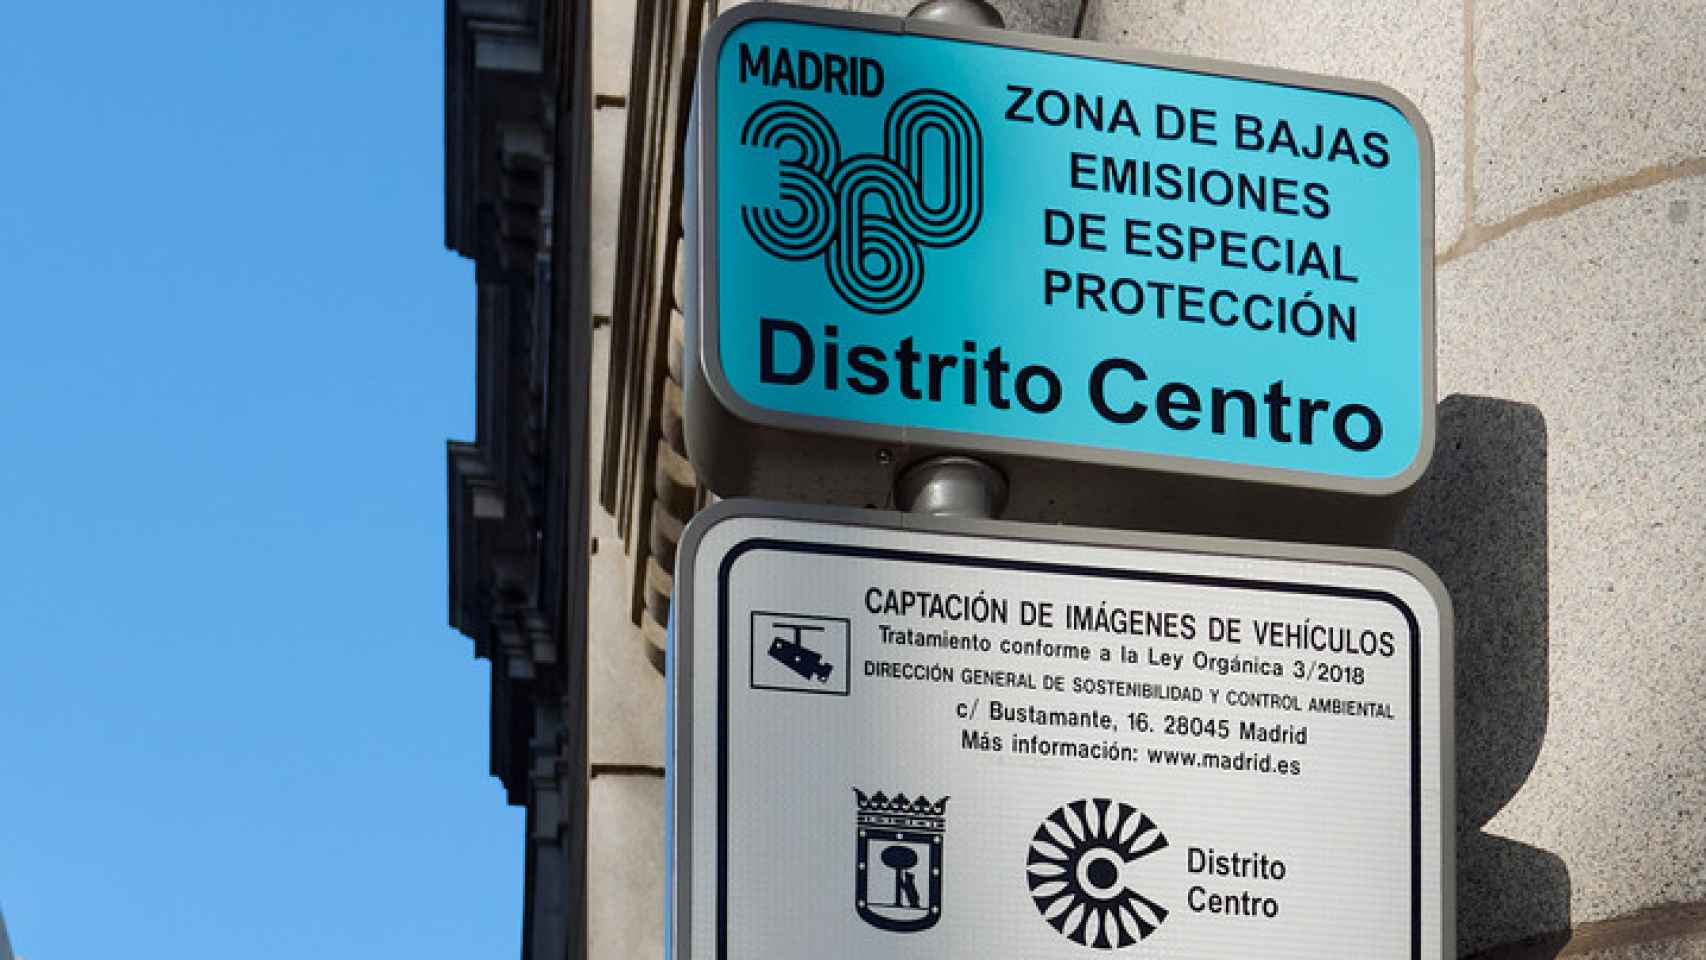 Señal de Zona de Bajas Emisiones de Madrid.